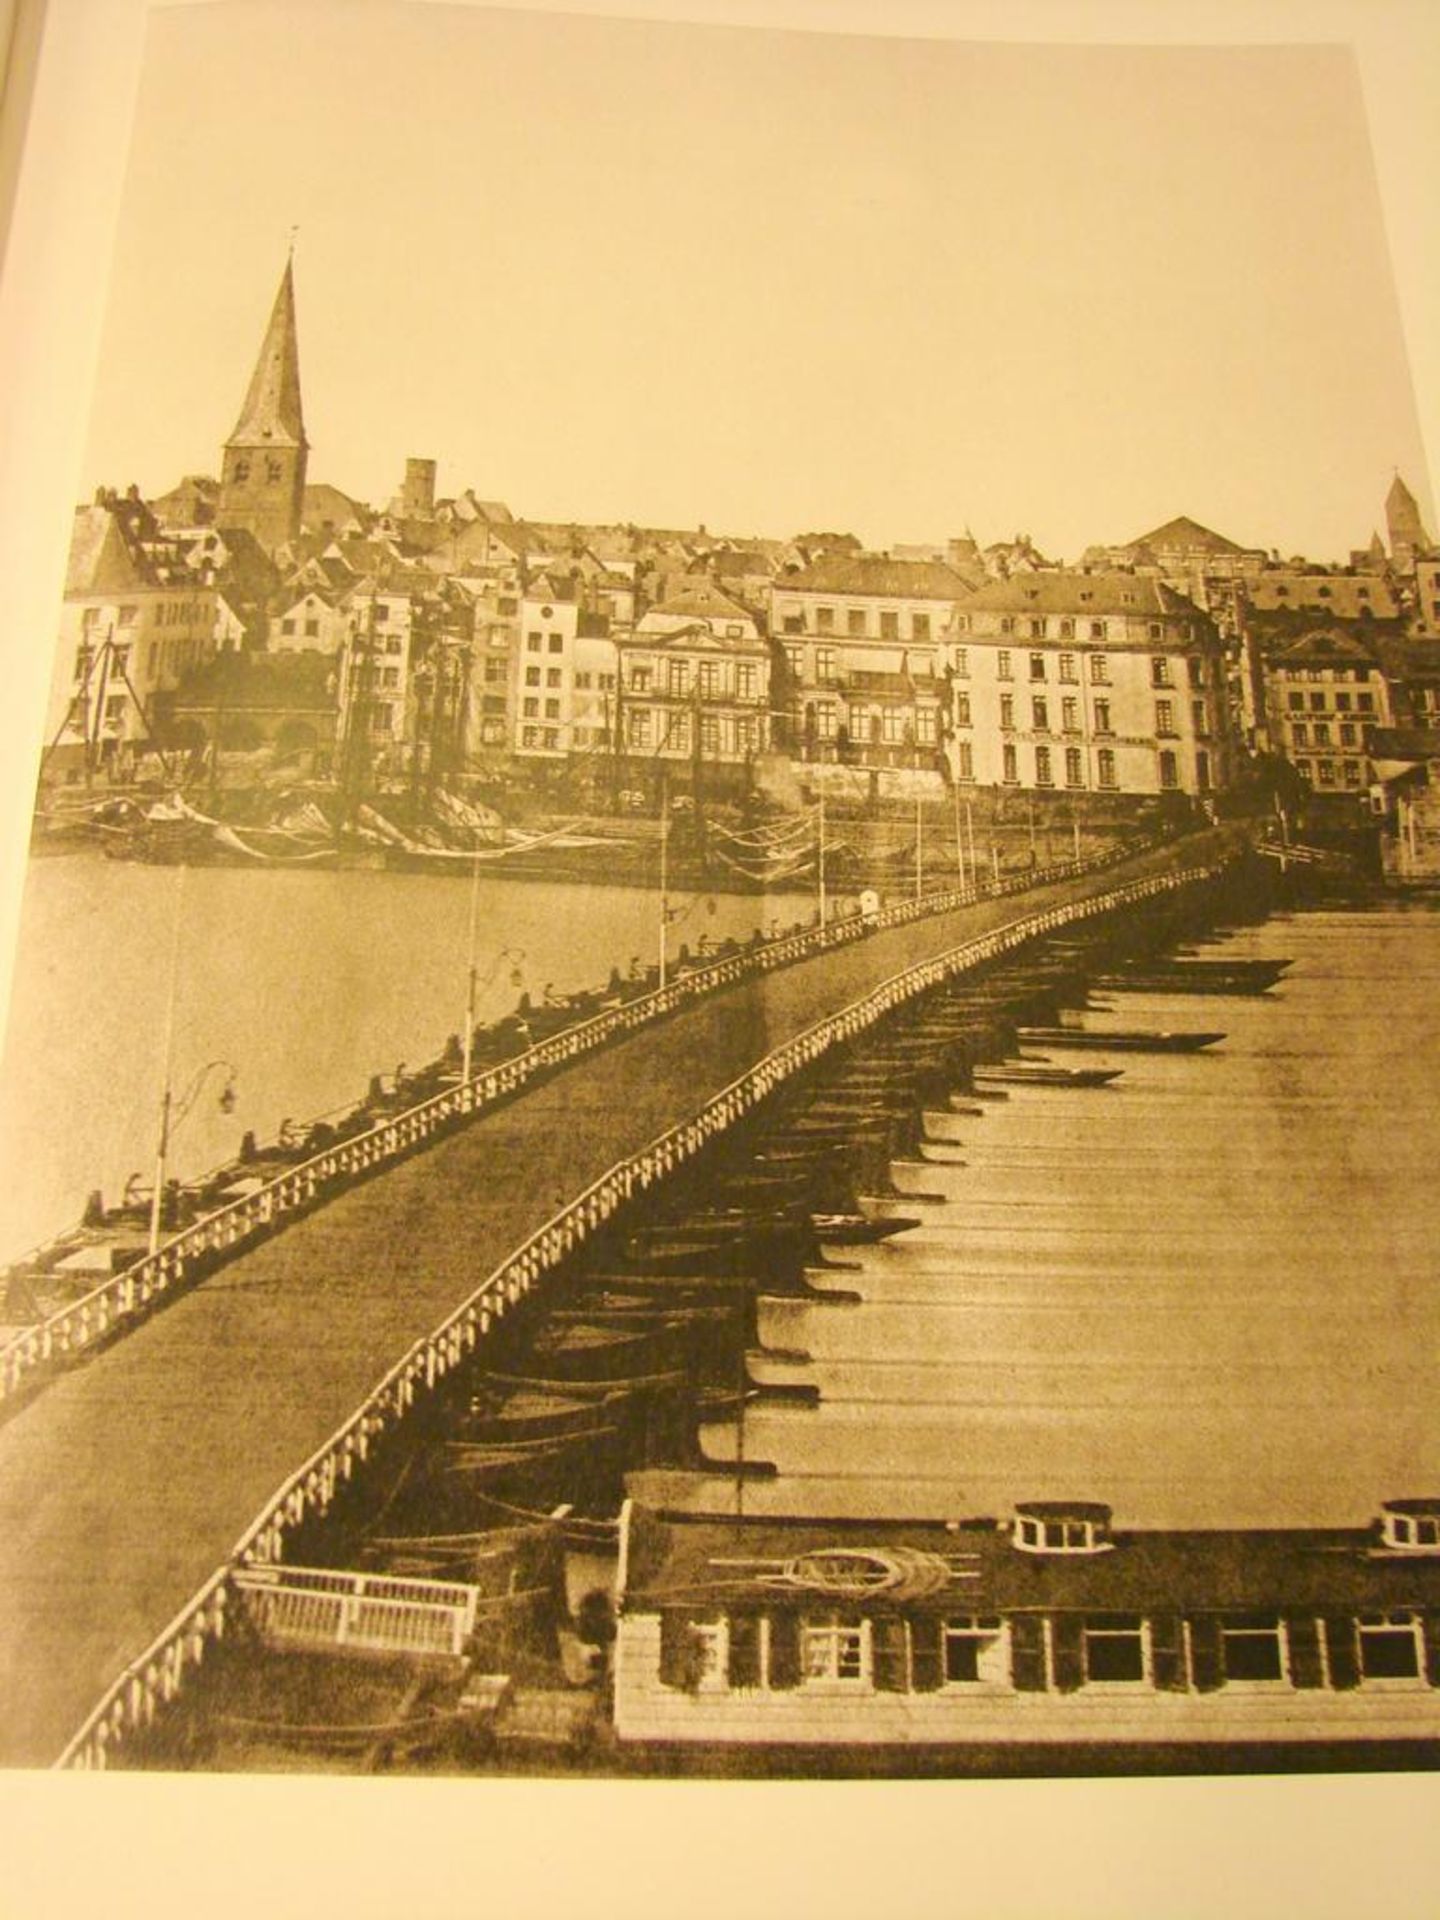 Buch, "Köln, 1850-1920", M. Leo Schwering, Photogalerie, Bucher, 1980 - Image 3 of 3